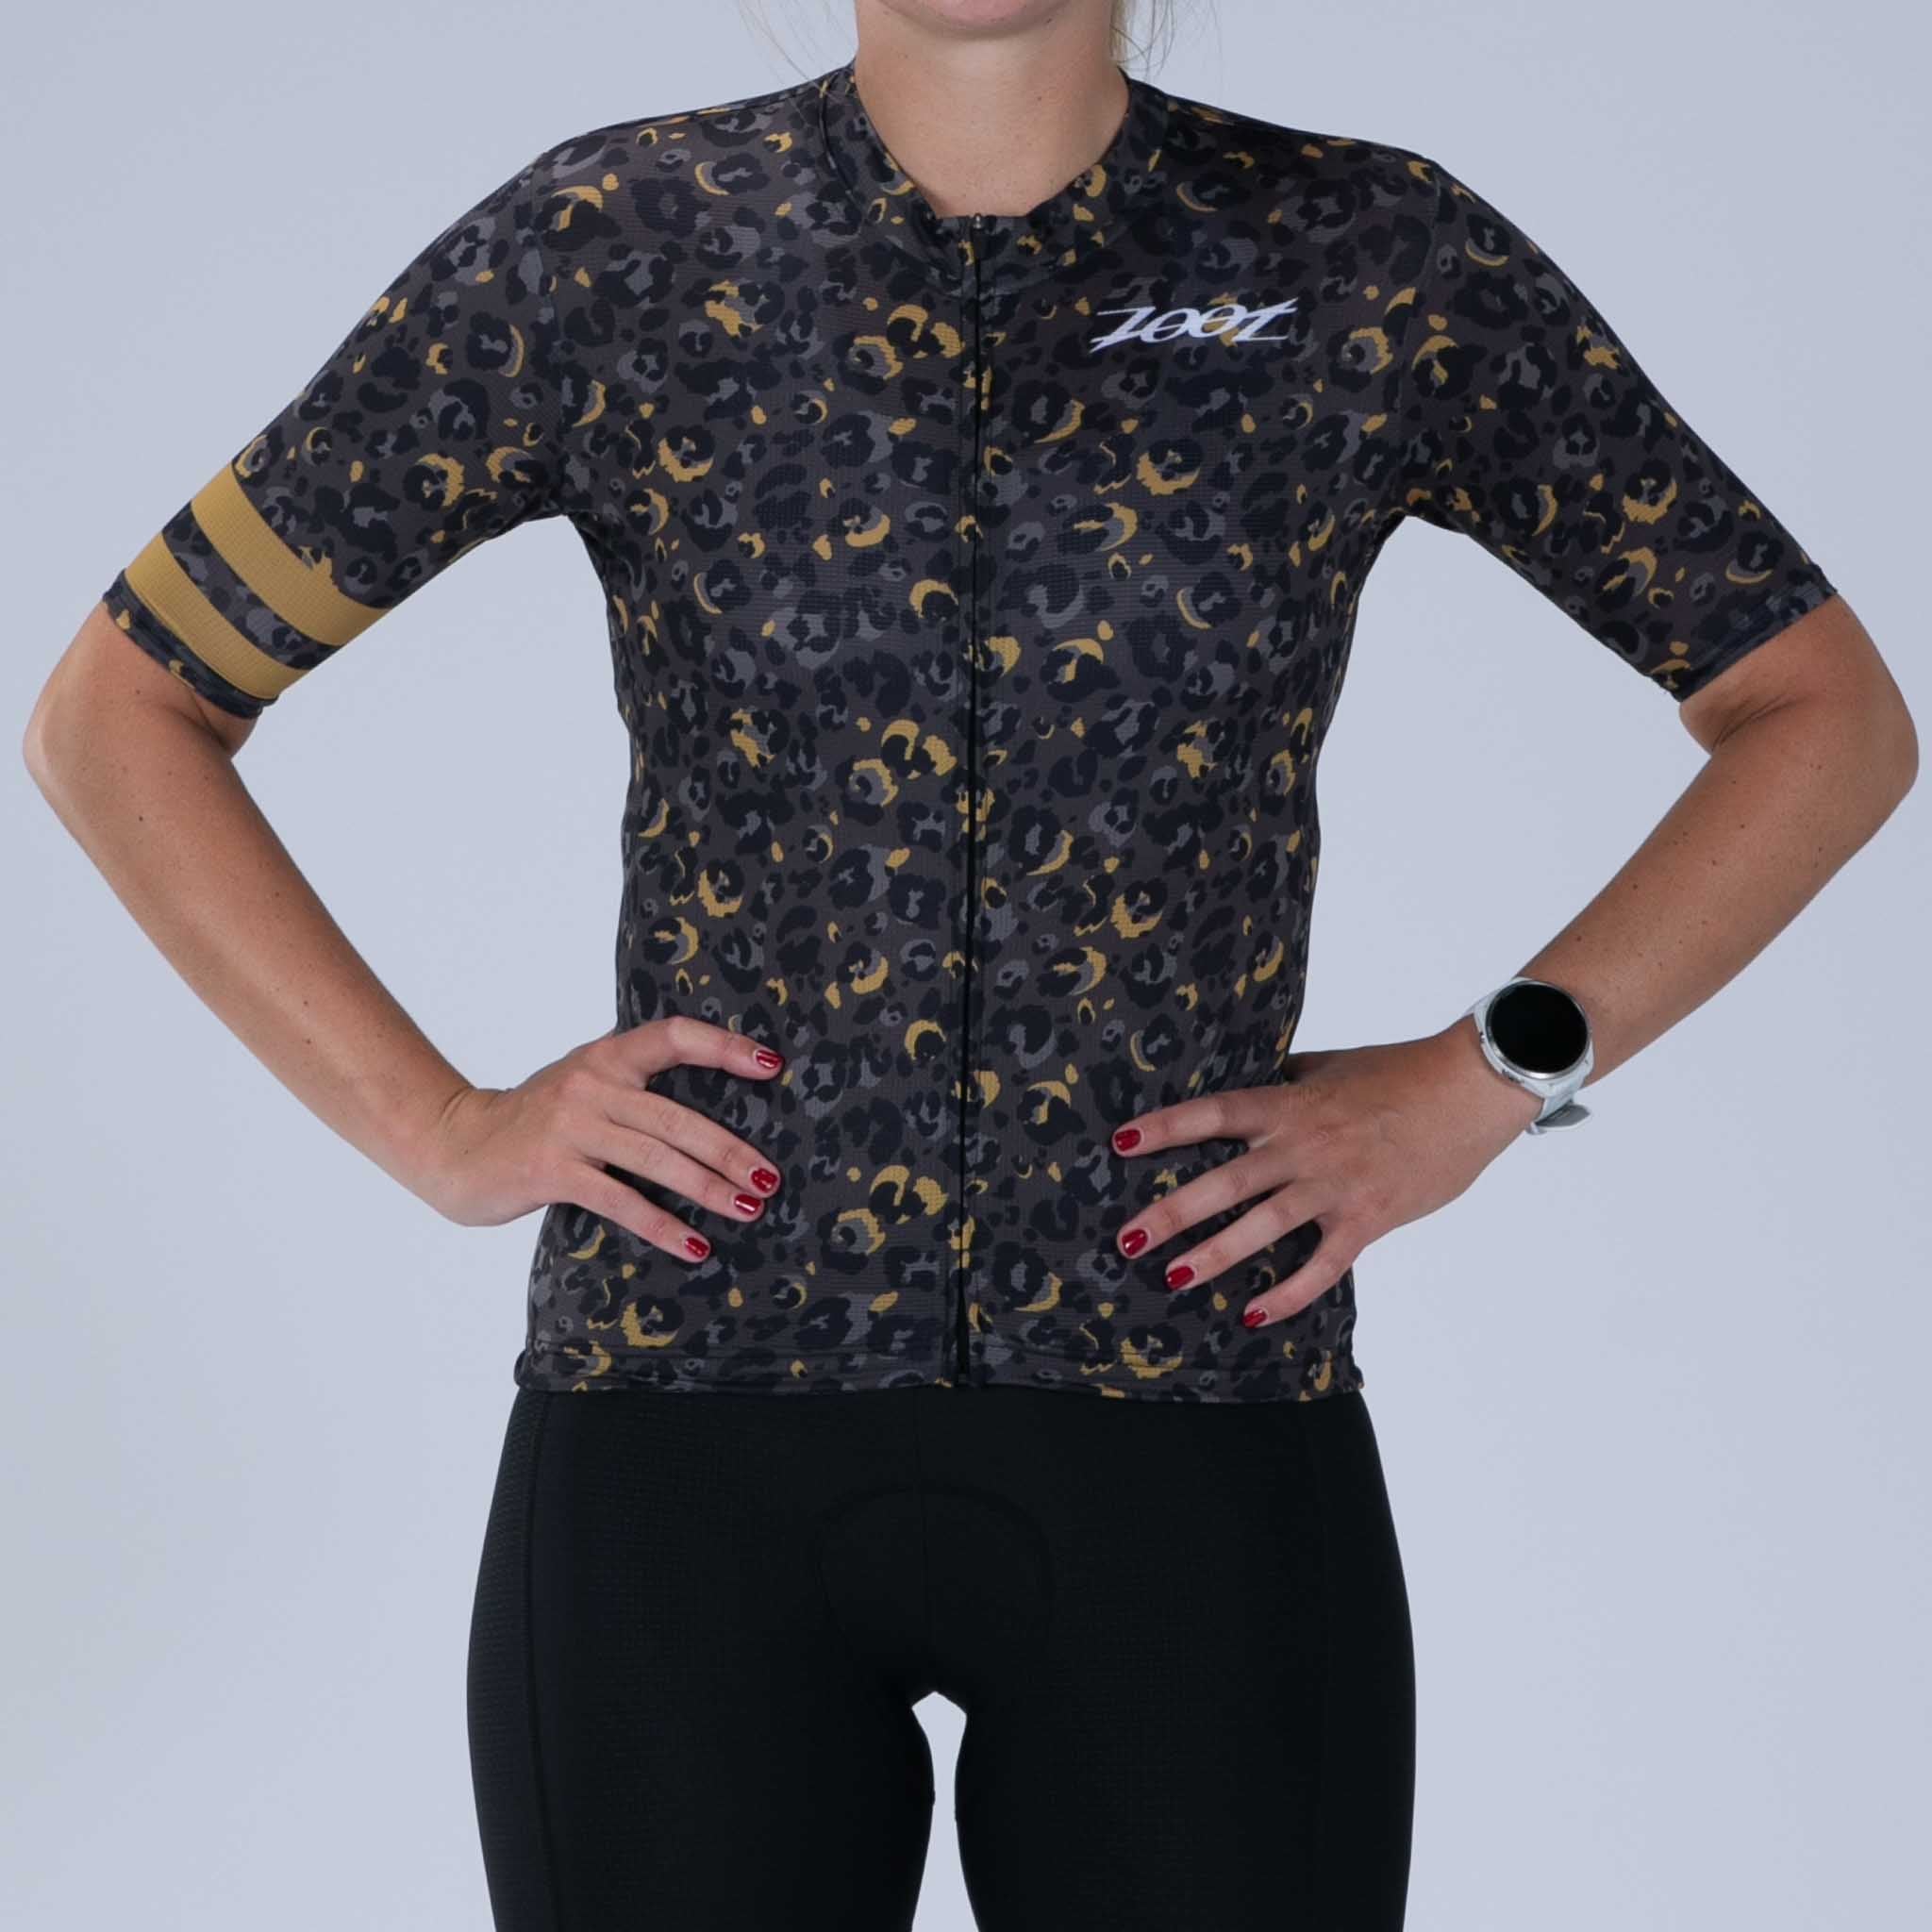 Zoot Sports CYCLE JERSEYS Women's Ltd Cycle Aero Jersey - Cheetah